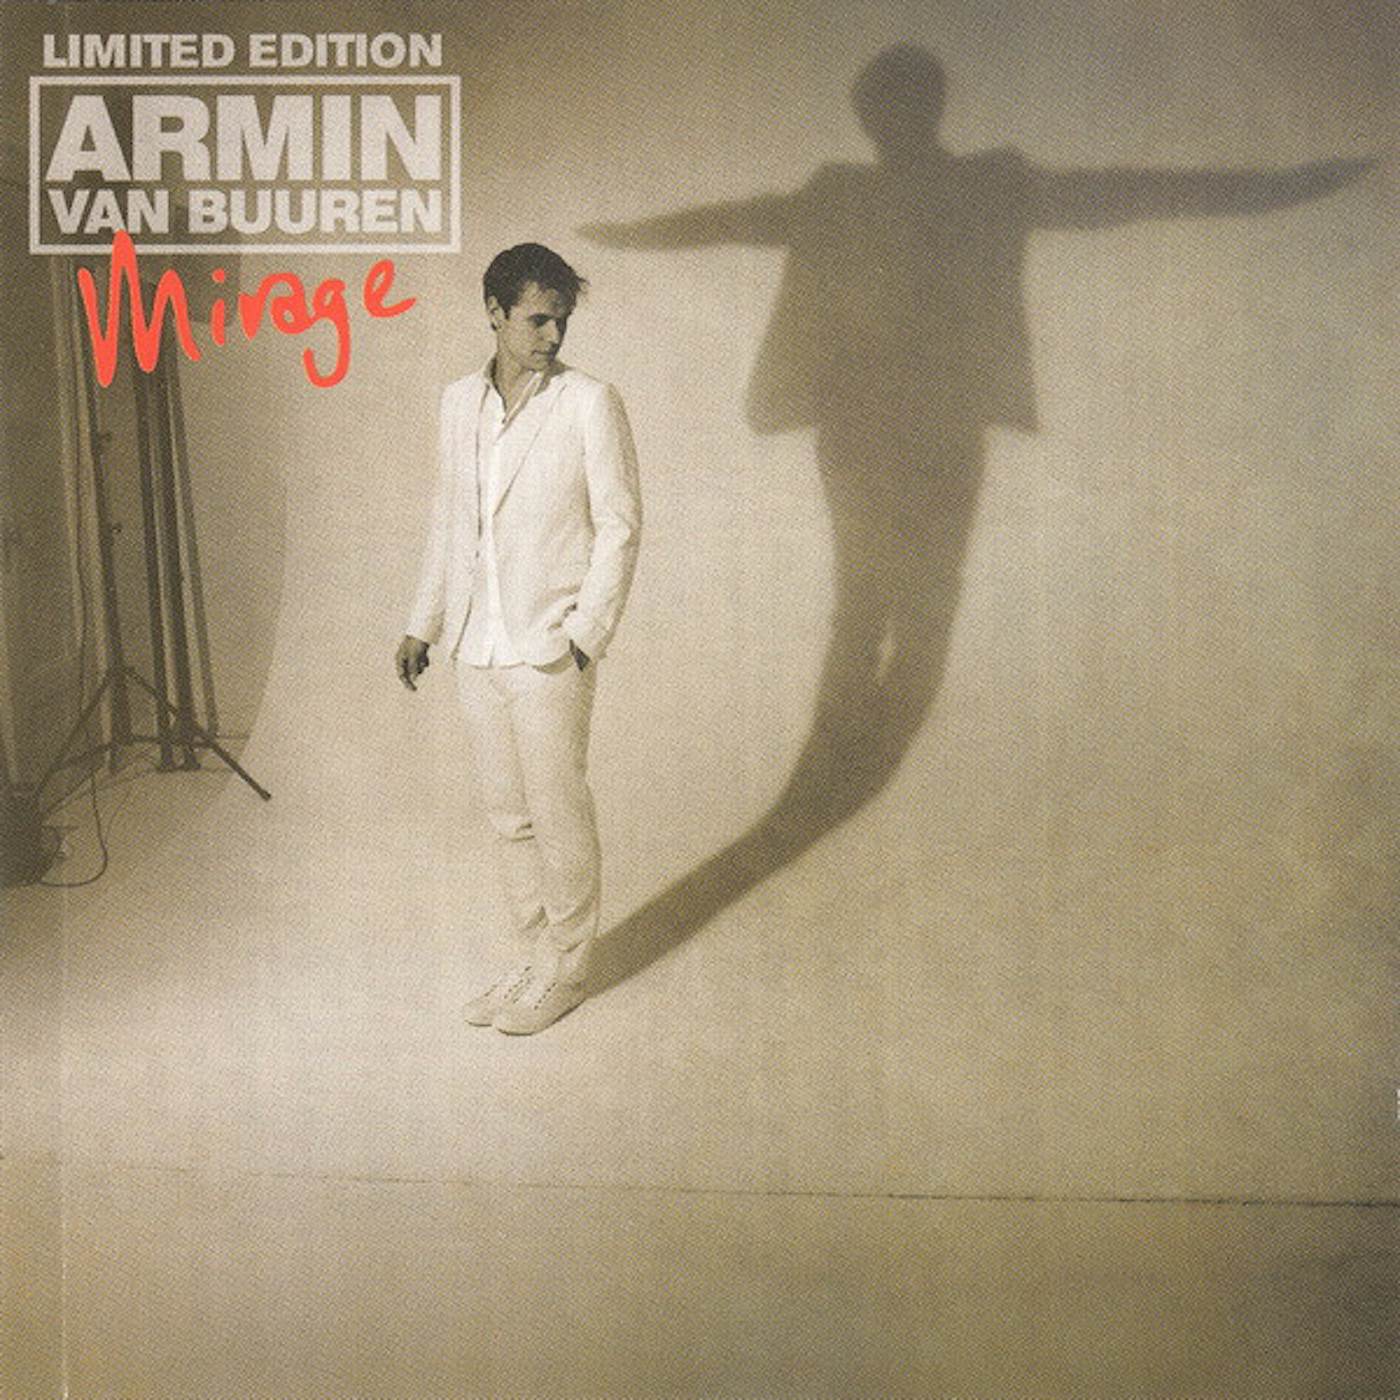 Armin van Buuren Mirage Vinyl Record